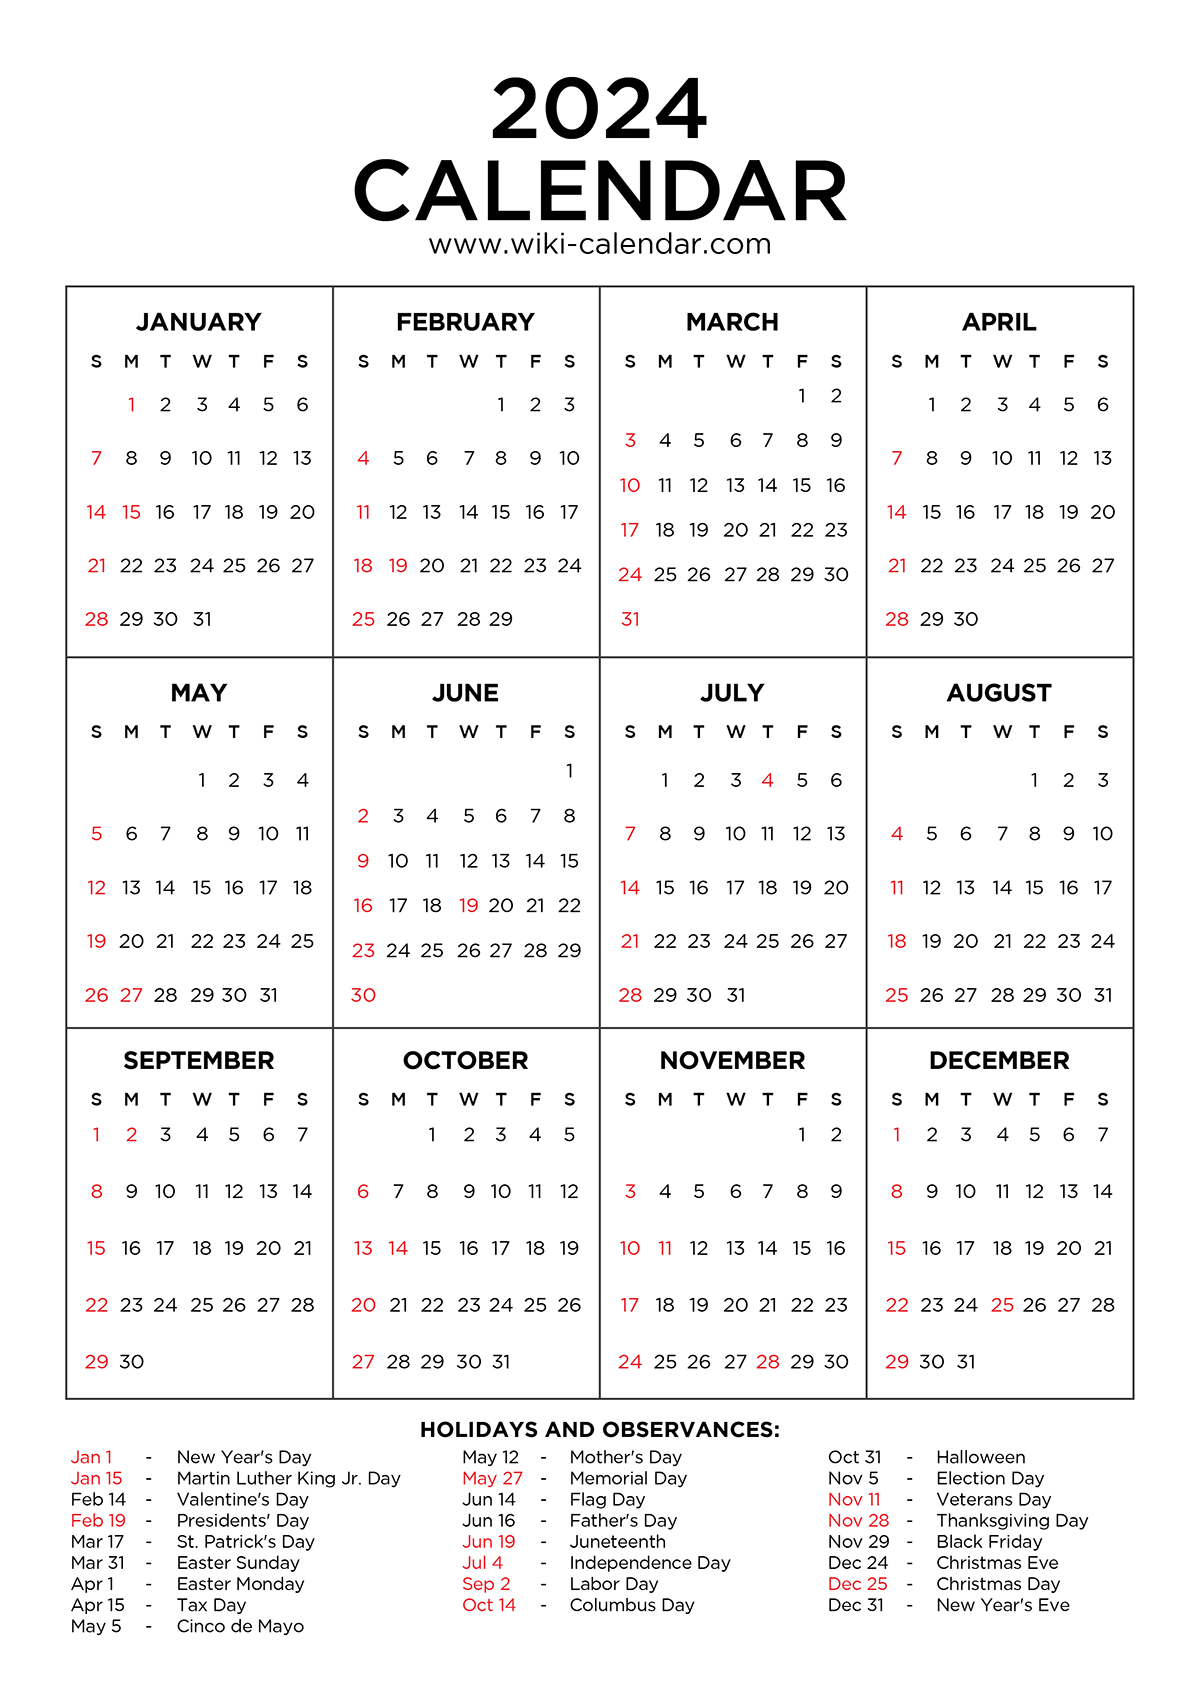 Year 2024 Calendar Printable With Holidays - Wiki Calendar with regard to Free Printable Calendar 2024 With Holidays Usa